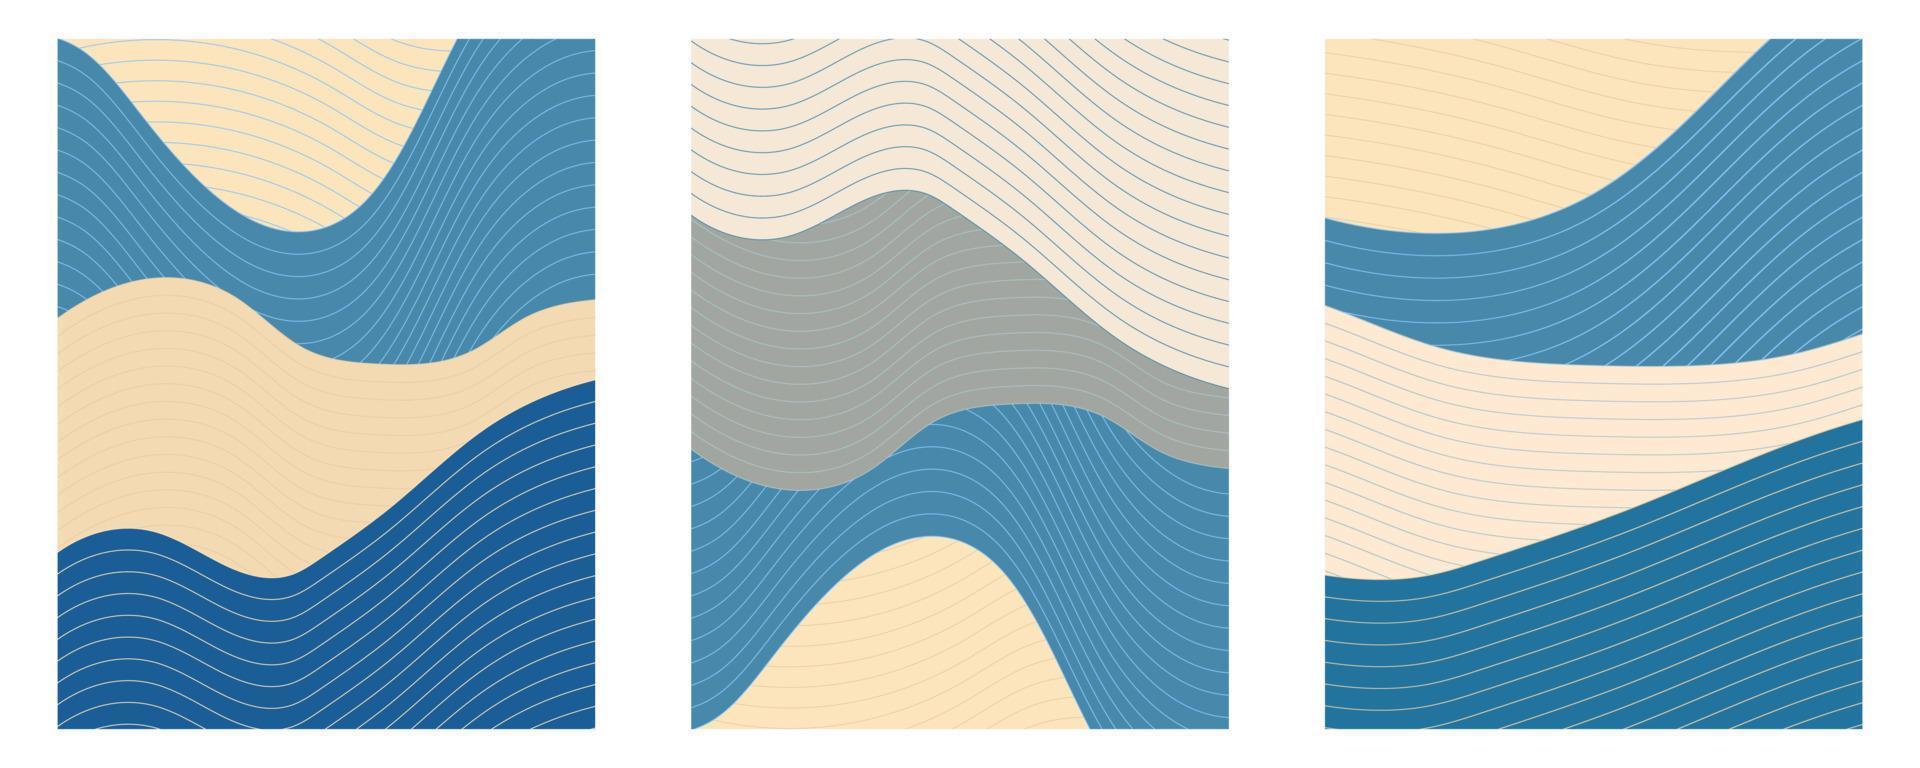 vloeiende Japanse oceaangolf vintage in blauw en beige. set poster vector ontwerpen met lijnelementen.